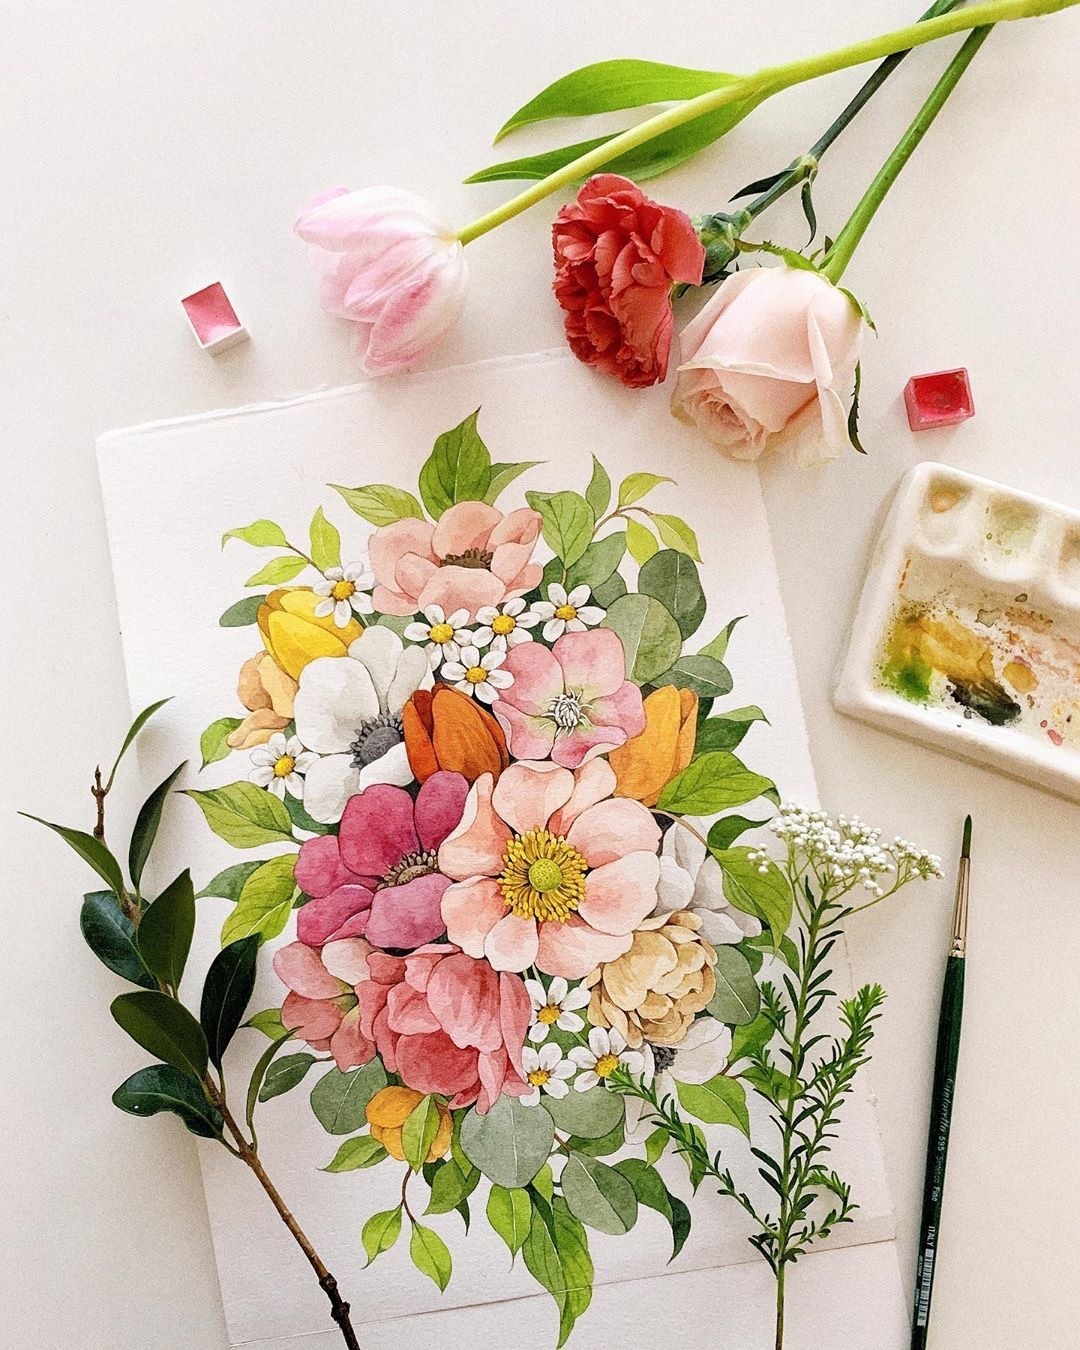 清新的色彩水彩花卉 堆糖,美图壁纸兴趣社区